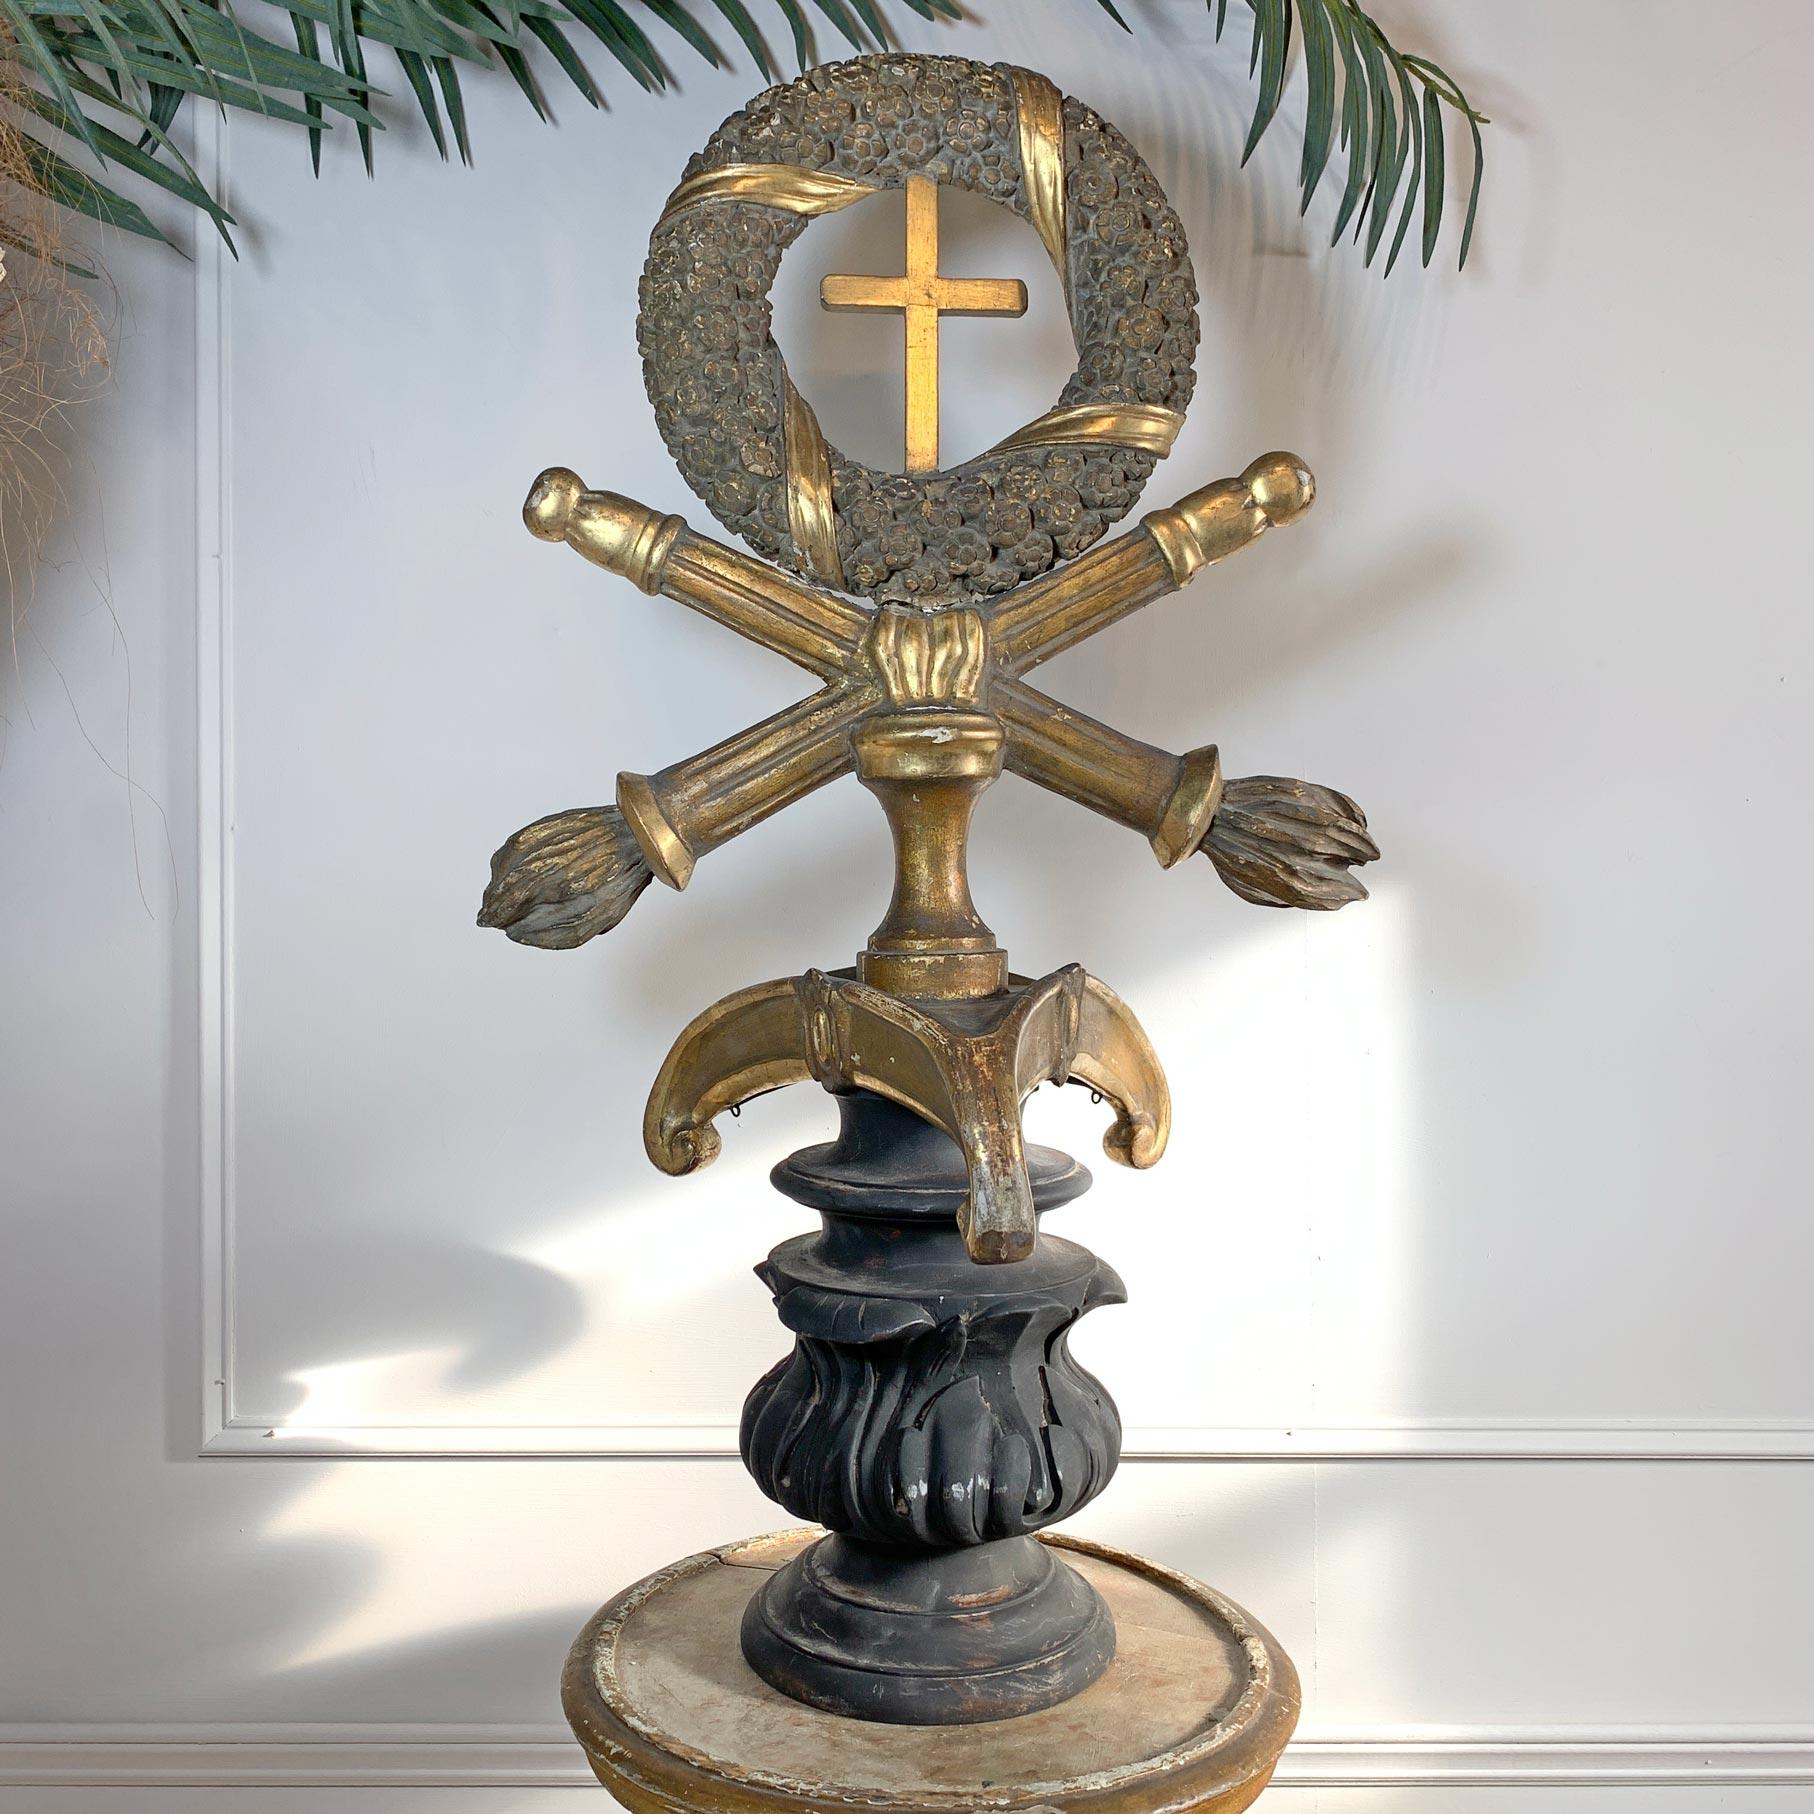 Croix de procession merveilleusement ornée en gesso doré sur bois sculpté, probablement dans le nord de l'Italie à la fin du XVIIIe siècle. La grande couronne florale avec des rubans dorés sculptés, une petite croix au centre est posée sur une paire